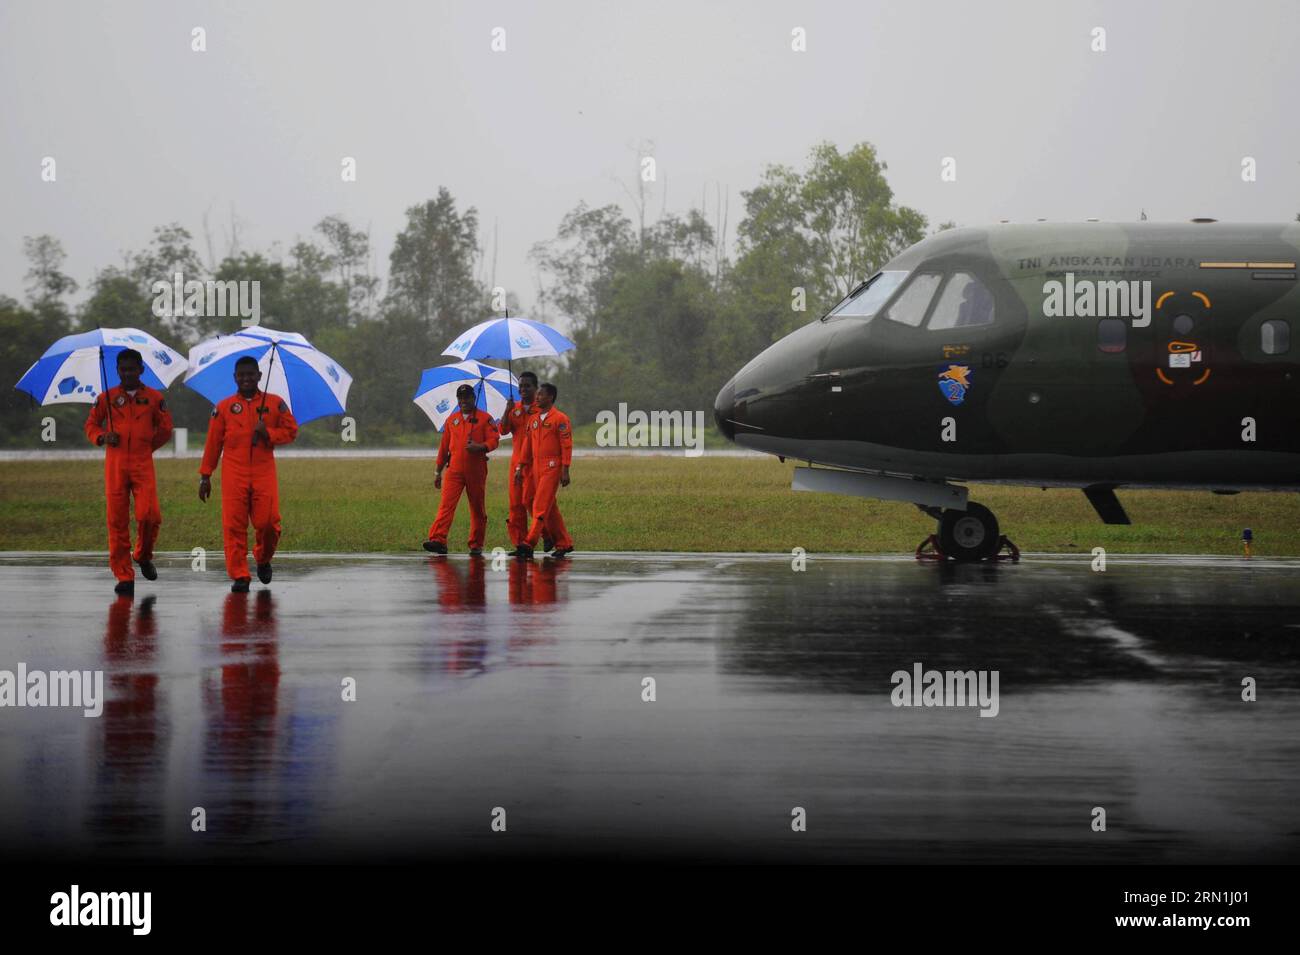 AKTUELL ZEITGESCHEHEN Absturz von AirAsia-Flug QZ8501 - schlechtes Wetter erschwert Suche nach Flugschreiber (150104) -- PANGKALAN BUN, 4. Januar 2015 -- indonesische Luftwaffenpiloten halten Regenschirme bei starkem Regen, während ihr Flugzeug am 4. Januar 2015 in Pangkalan Bun, Indonesien, abgesagt wird. Das Such- und Rettungsteam muss noch die schwarzen Boxen des abgestürzten AirAsia-Fluges QZ8501 finden, da noch immer schlechtes Wetter auf der Absturzstelle herrscht, sagte ein indonesischer Beamter hier am Samstag. ) INDONESIEN-PANGKALAN BUN-AIRASIA-SCHWERER REGEN AGUNGXKUNCAHYAXB. PUBLICATIONxNOTxINxCHN News aktuelle Ereignisse Crash From Air Stockfoto